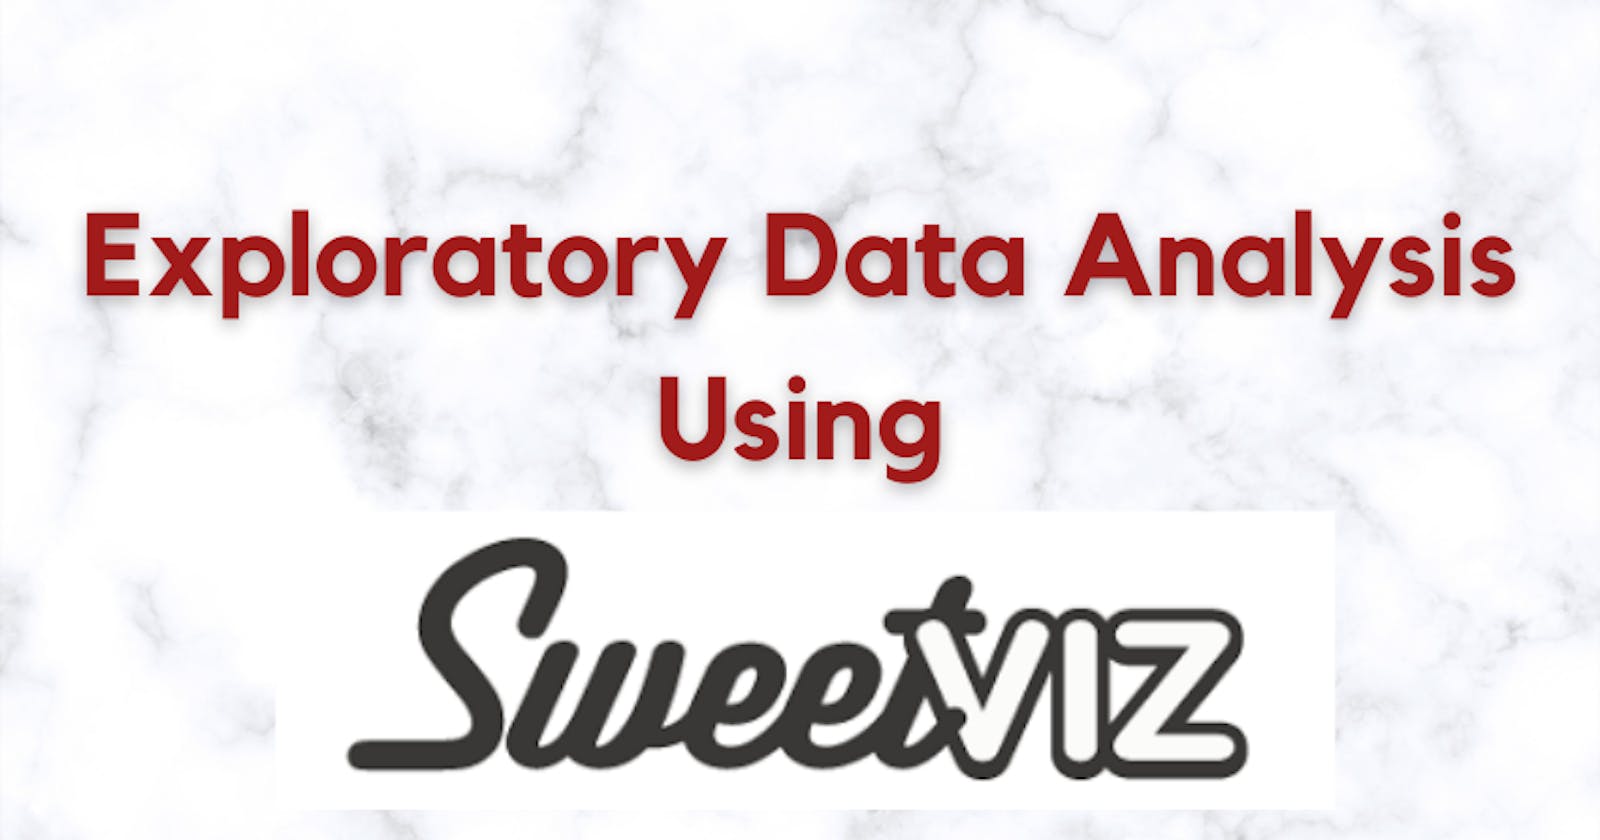 Exploratory Data Analysis using SweetViz